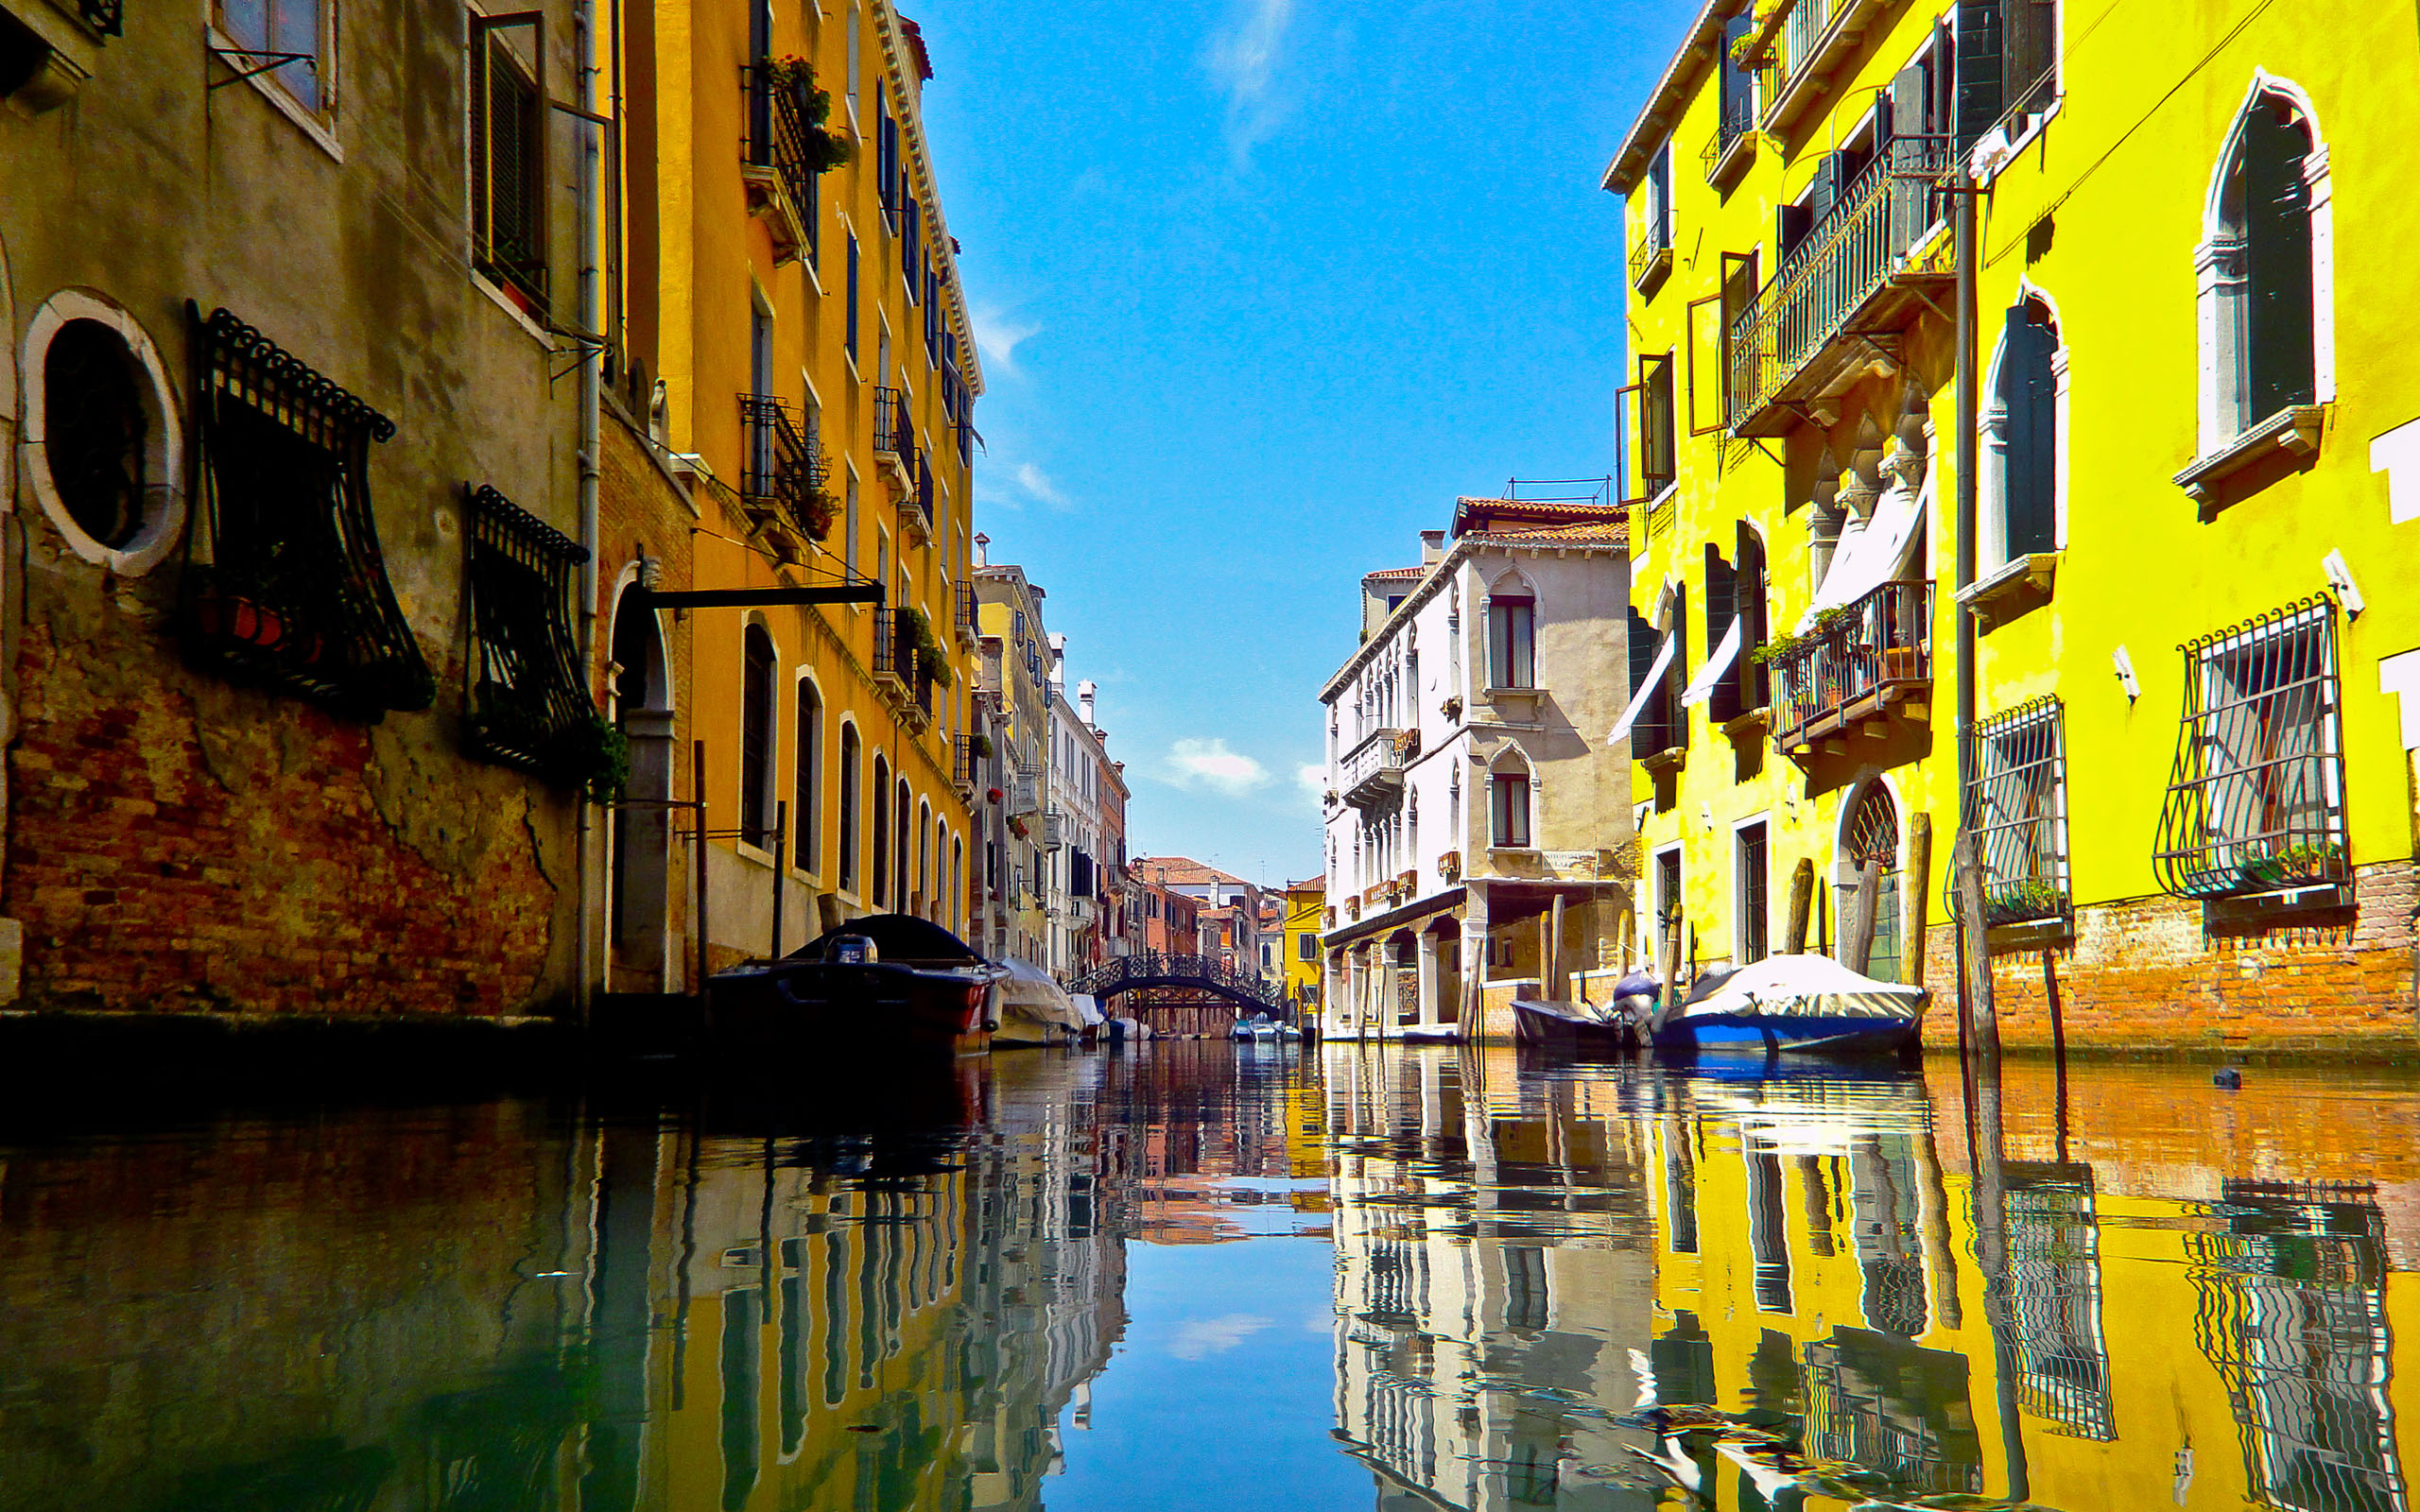 Hình nền Venice Italy tuyệt đẹp đang chờ bạn! Bạn có thể tạo cho mình một không gian dễ chịu mỗi khi nhìn vào màn hình máy tính hoặc thiết bị di động của mình. Hãy tải miễn phí hình nền Venice Italy Backgrounds HD với độ phân giải cao và cảm nhận không gian tuyệt vời này.